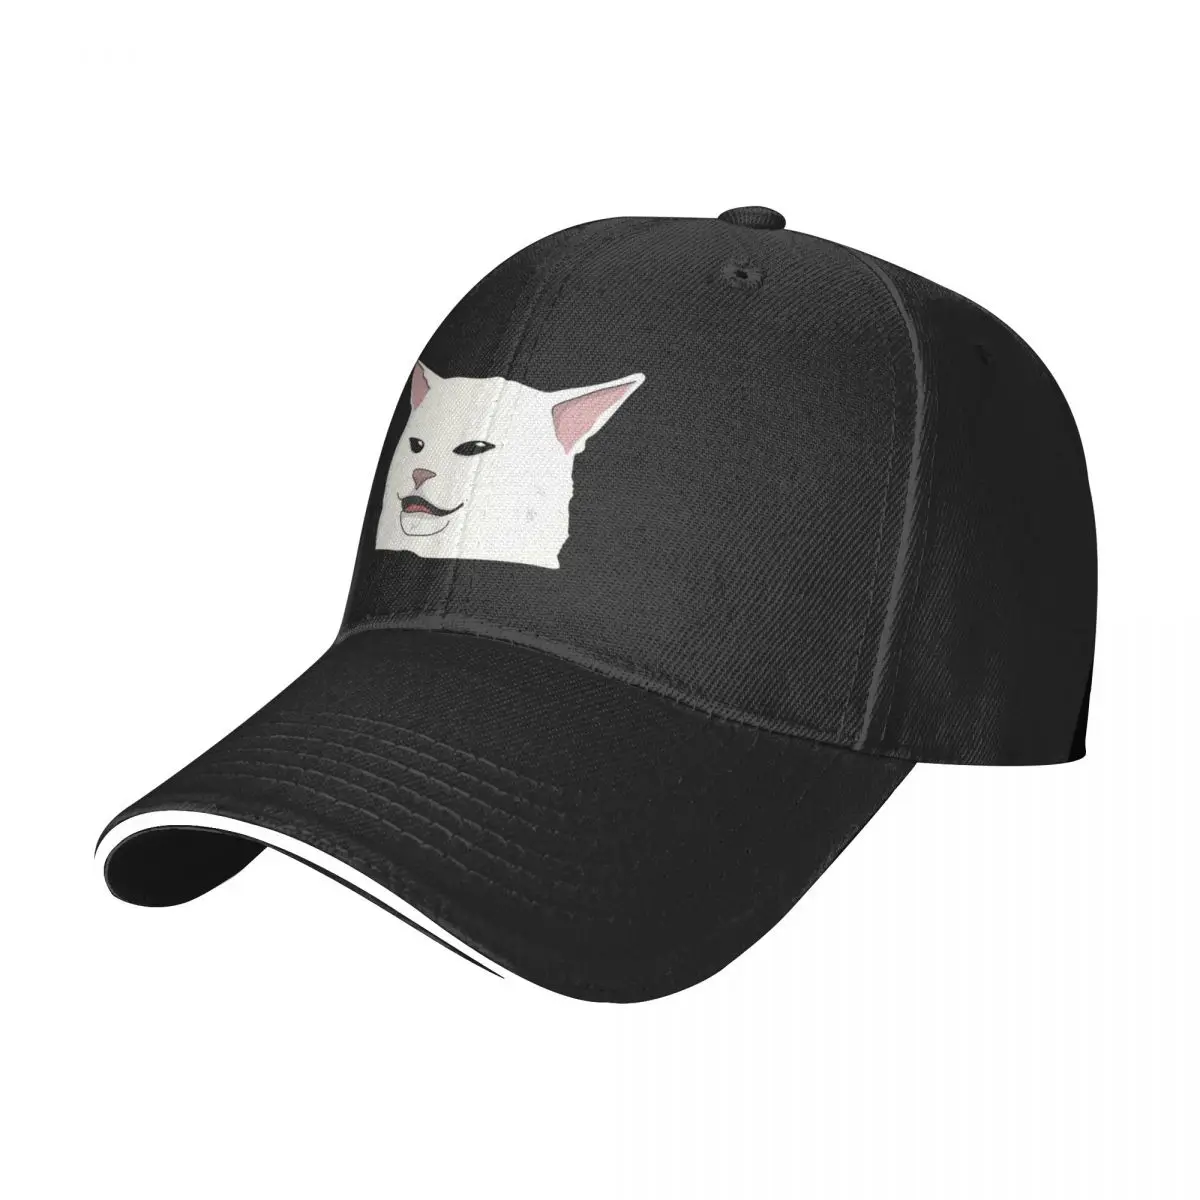 

New smudge the cat meme Baseball Cap Rave Wild Ball Hat Trucker Cap Women'S Hats For The Sun Men'S